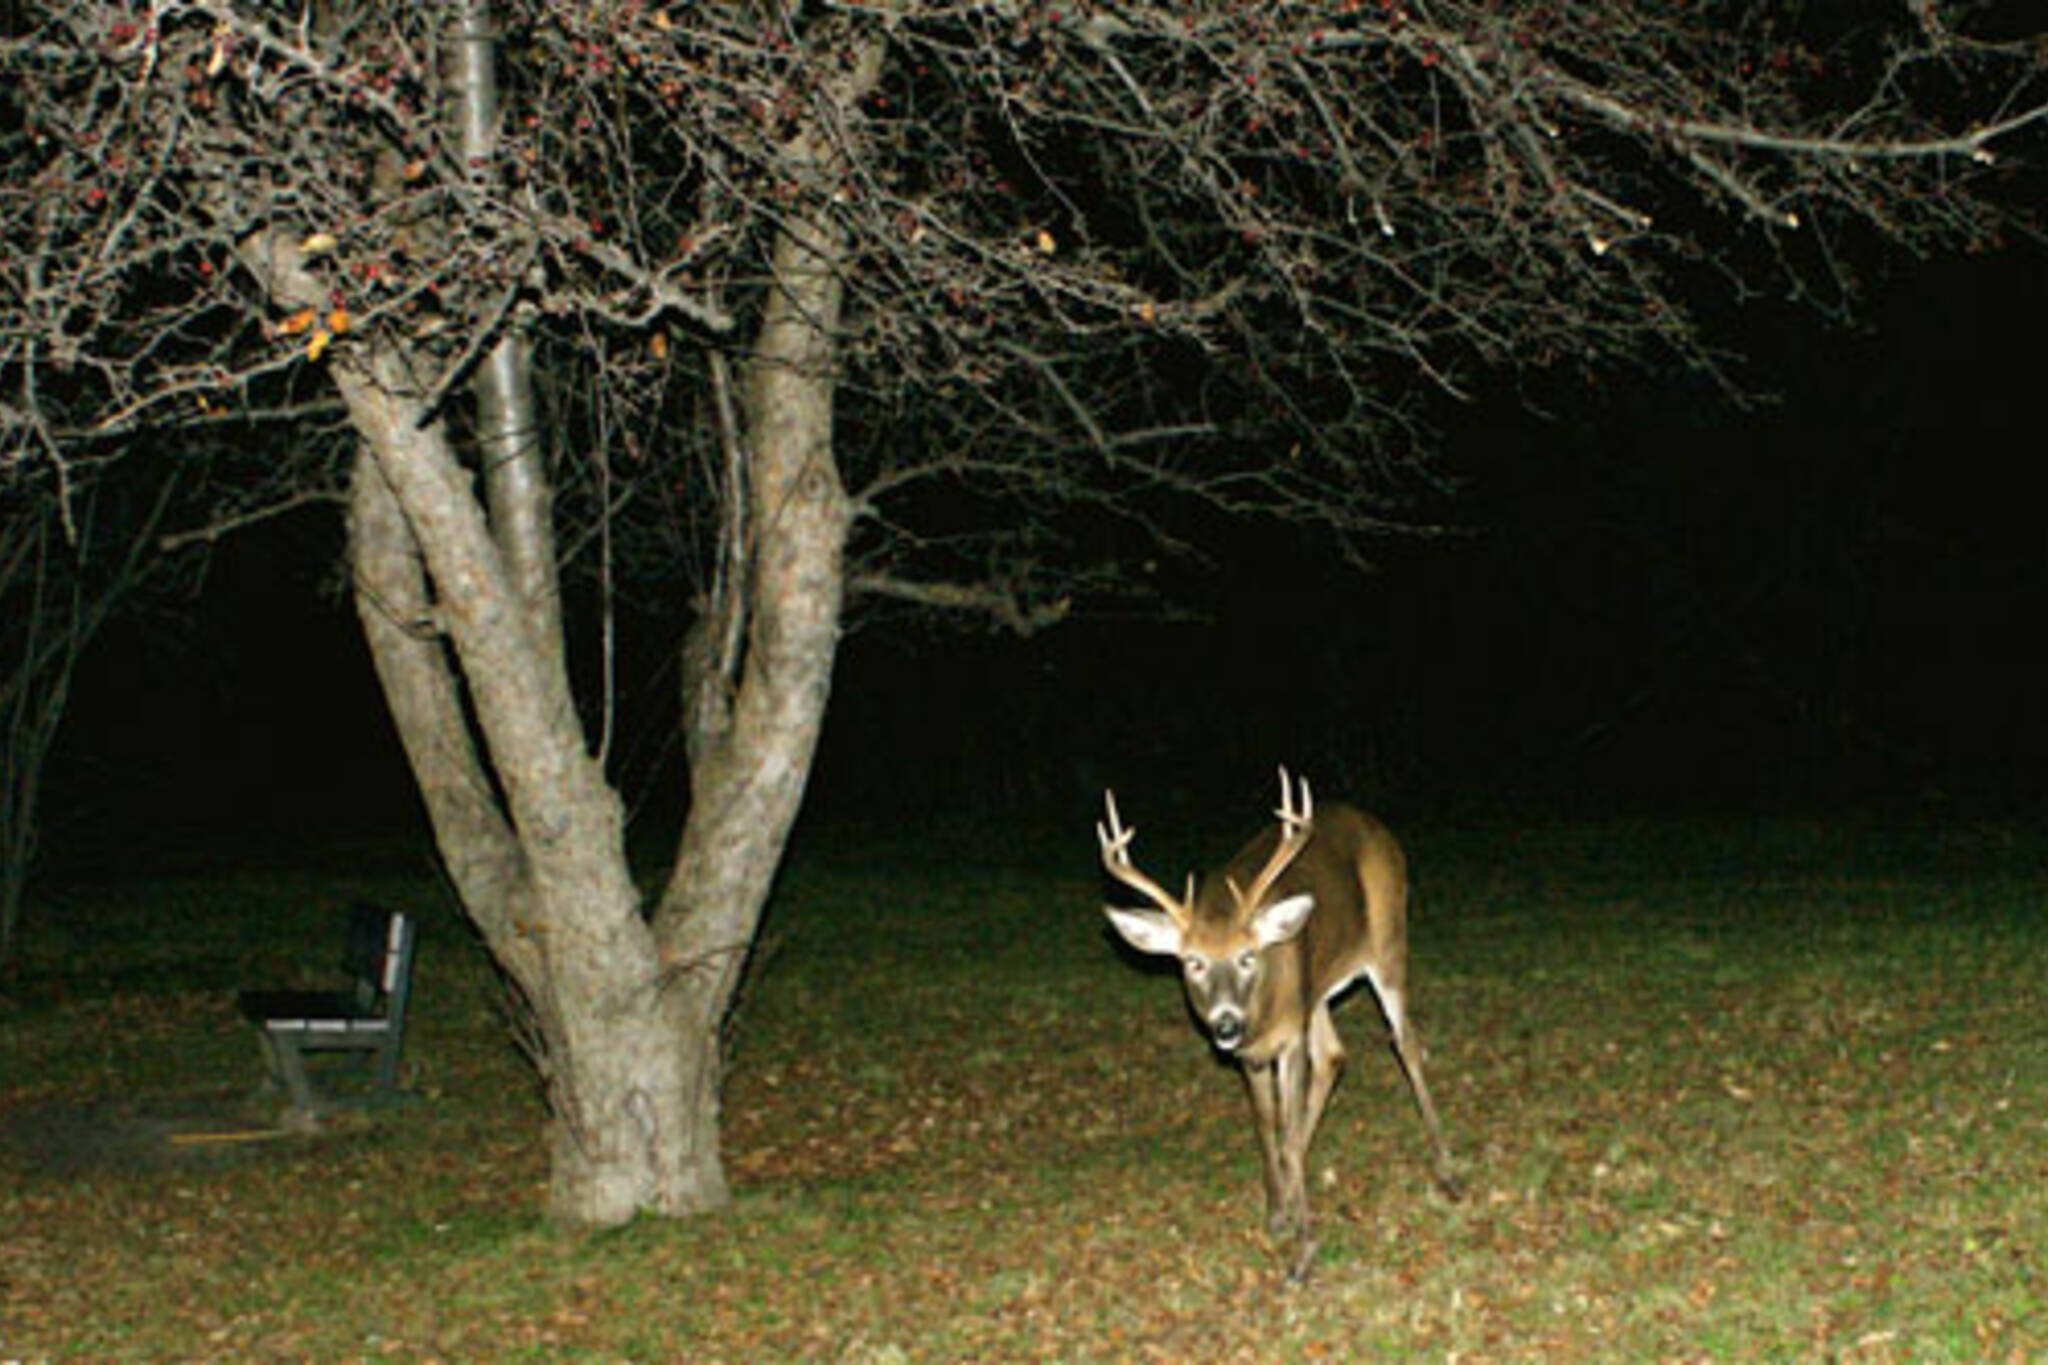 Deer In Toronto ravine